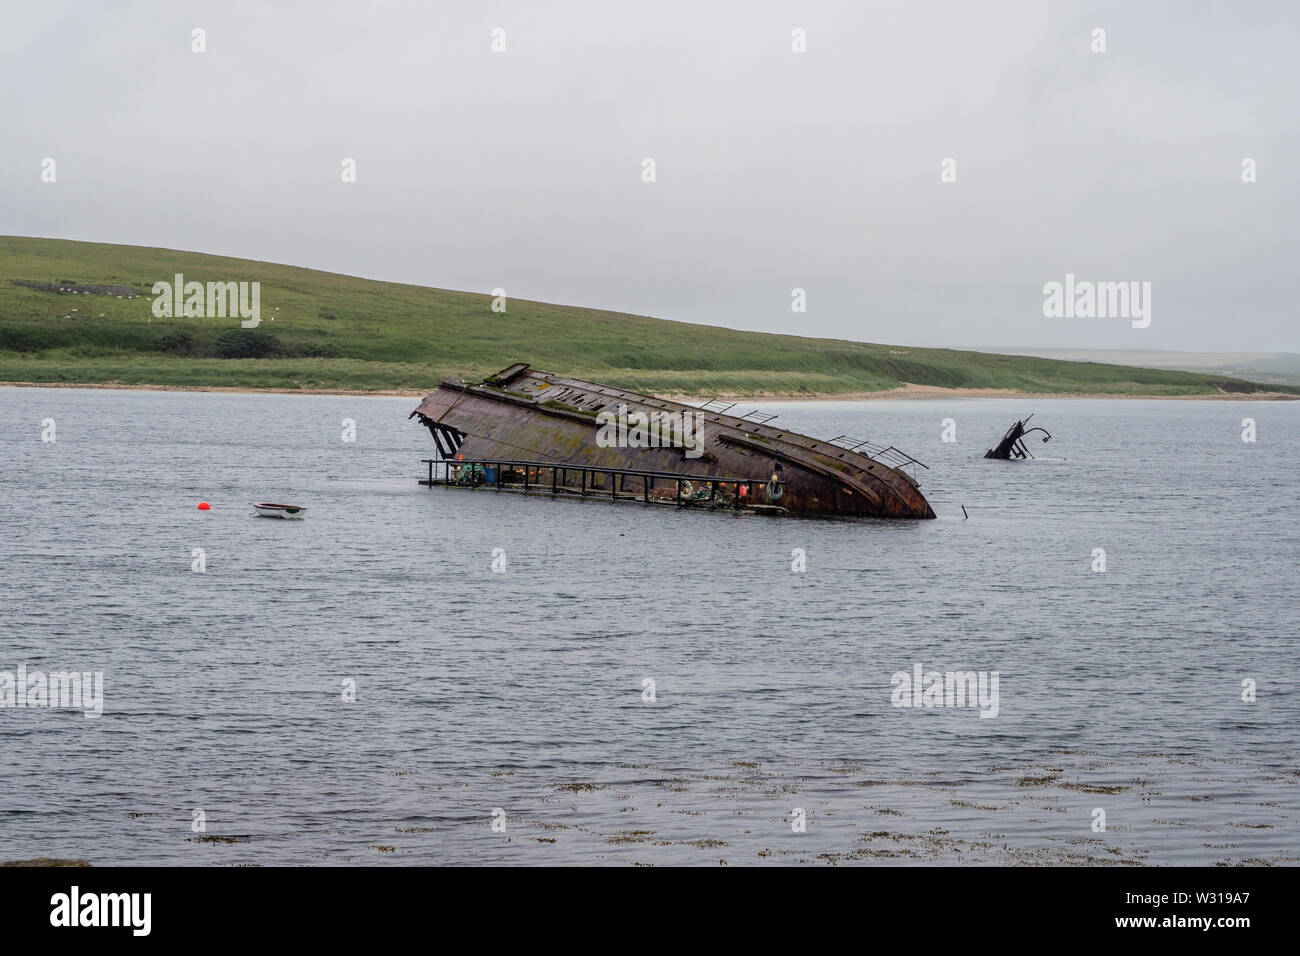 Scapa Flow è un corpo di acqua nelle isole Orcadi Scozia, al riparo dalle isole di terraferma, Graemsay, Burray, South Ronaldsay e Hoy. Foto Stock